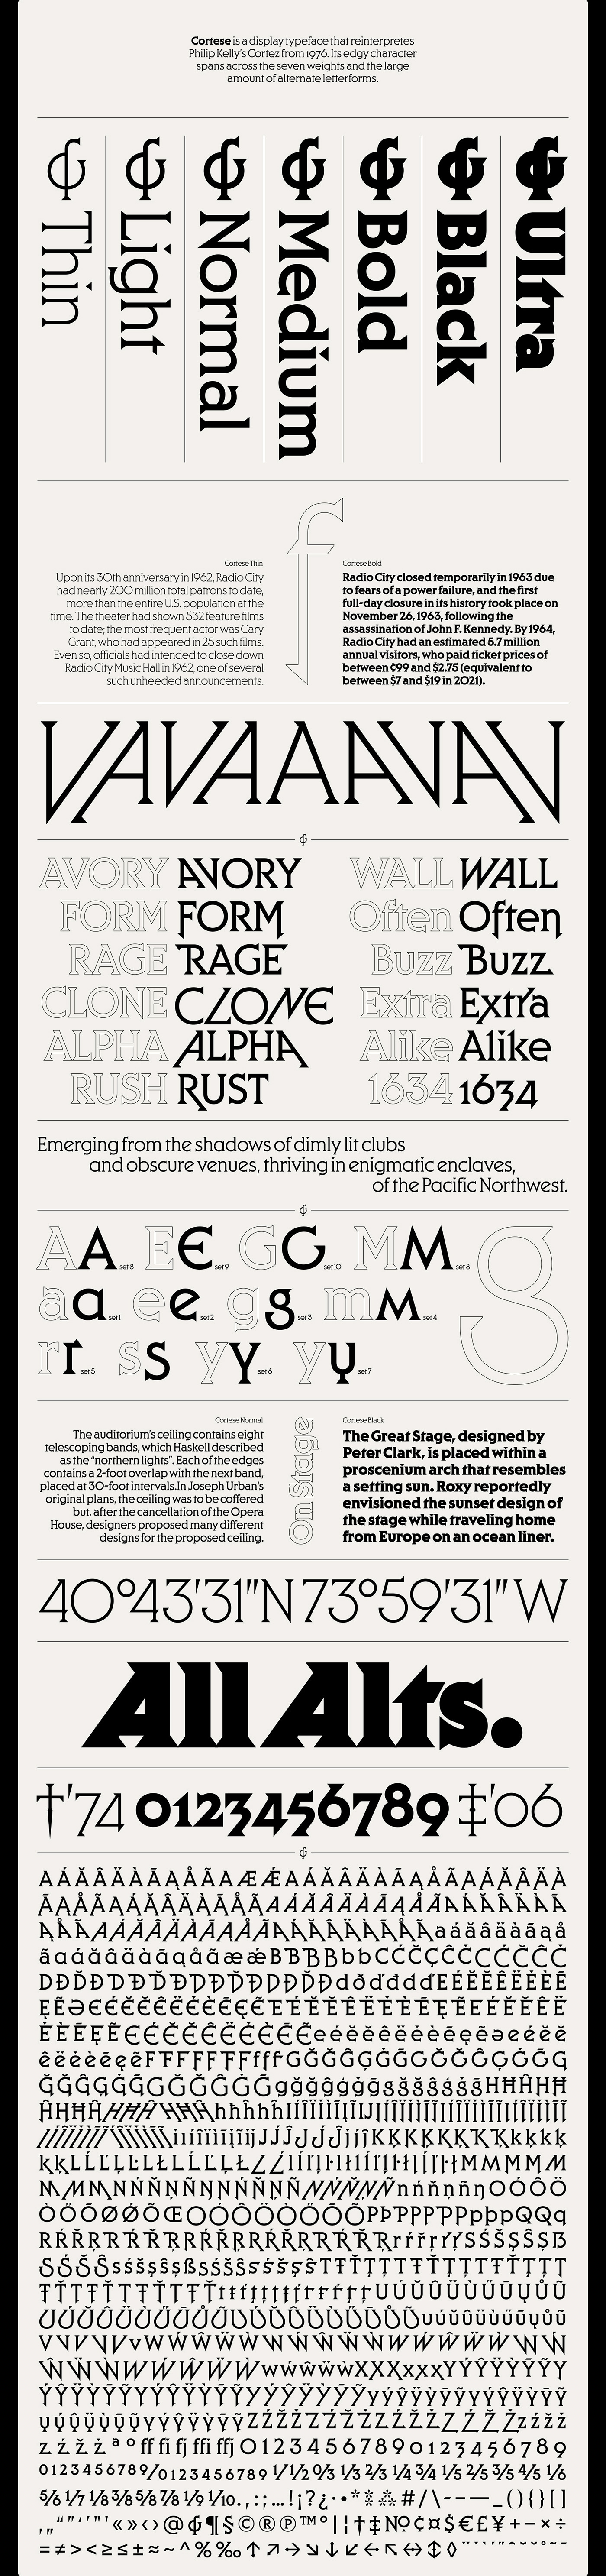 display font display type professional Retro seventies Typeface type vintage font Mark van Leeuwen